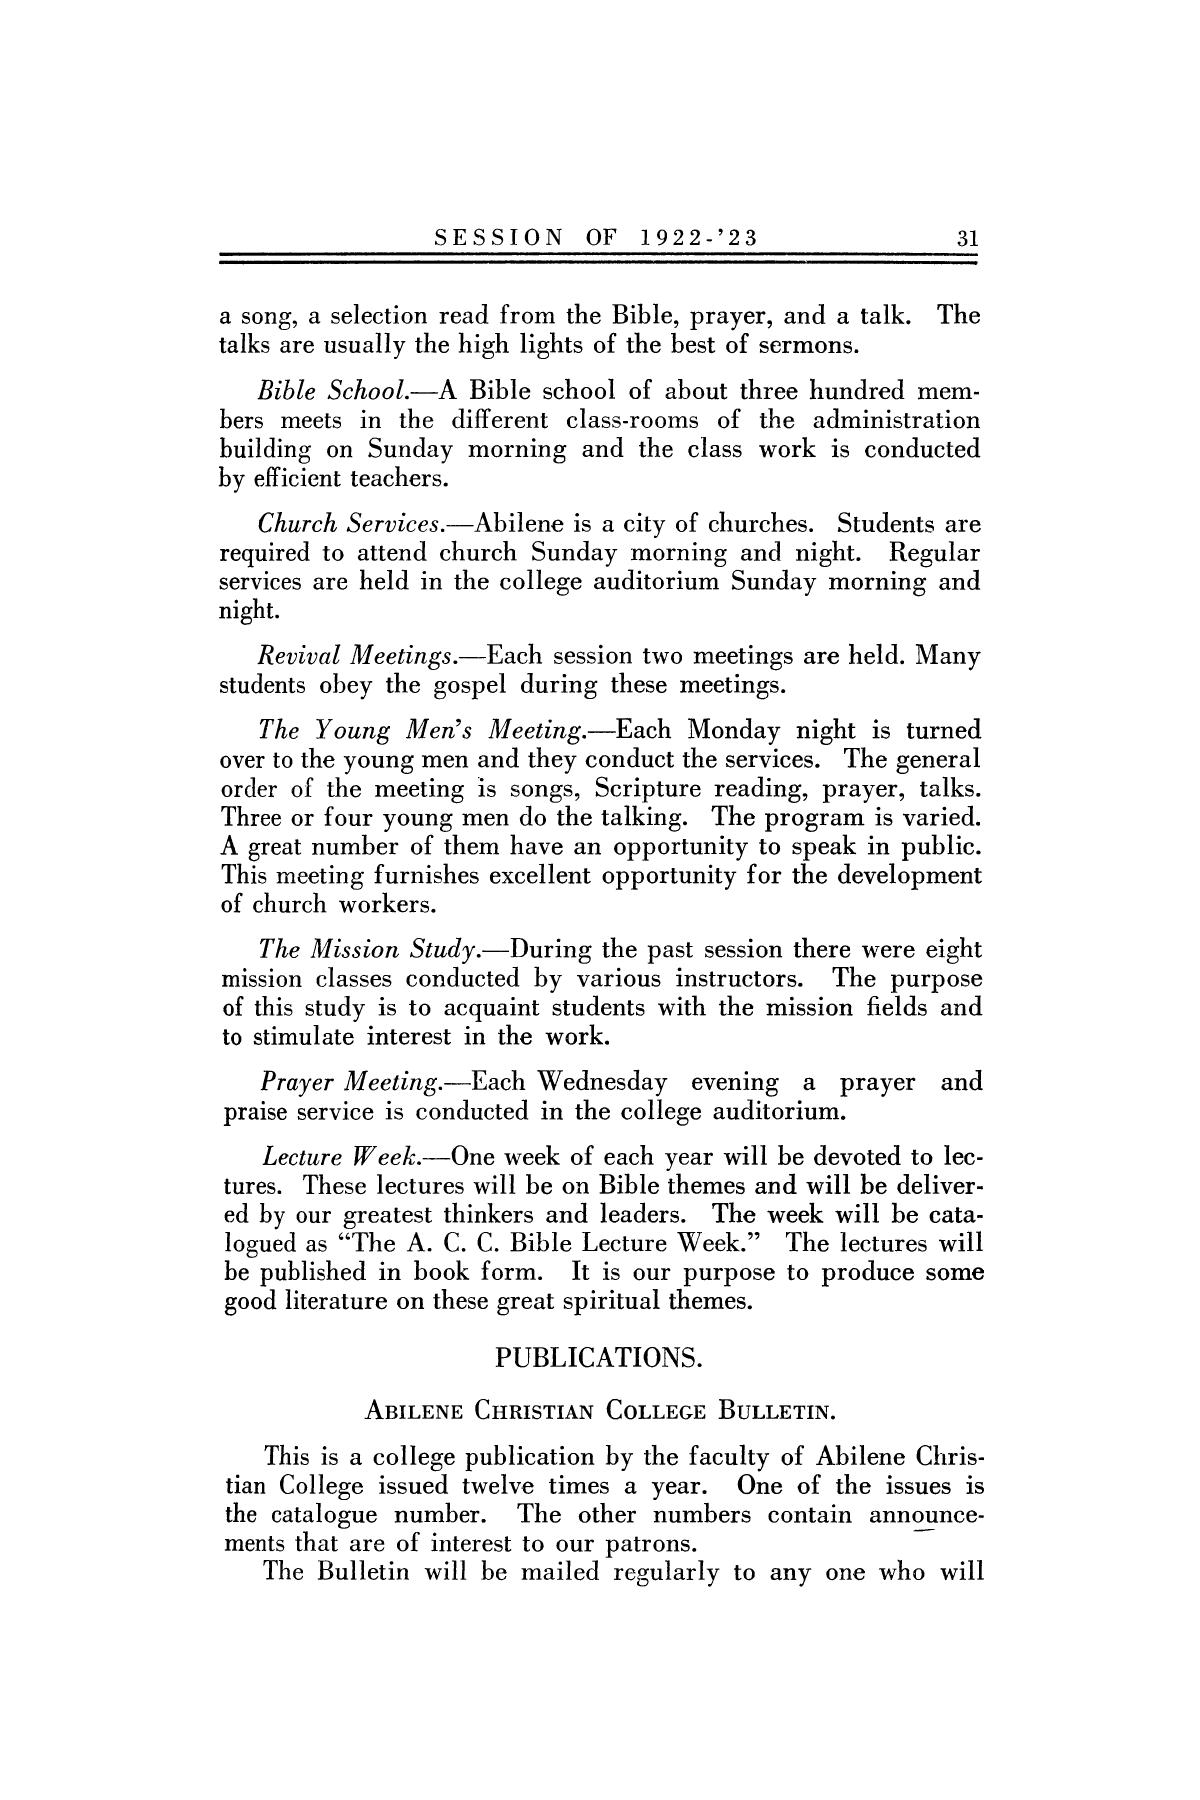 Catalog of Abilene Christian College, 1922-1923
                                                
                                                    31
                                                